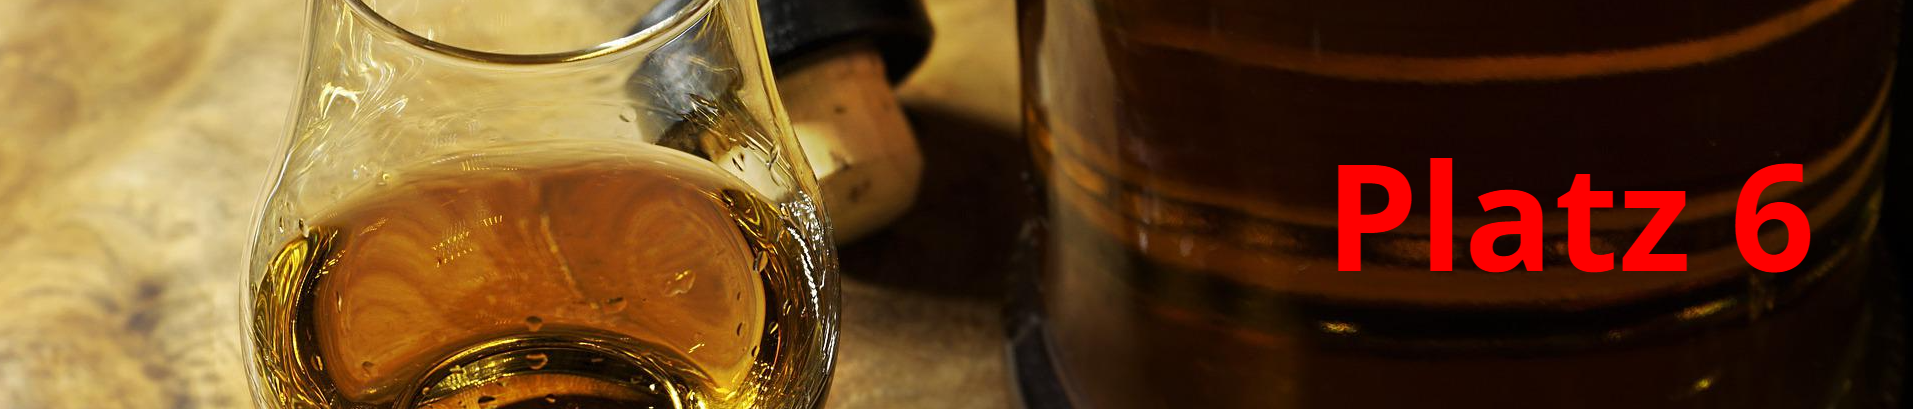 Platz 6 Whiskyempfehlungen.de Belvenie Double Wood